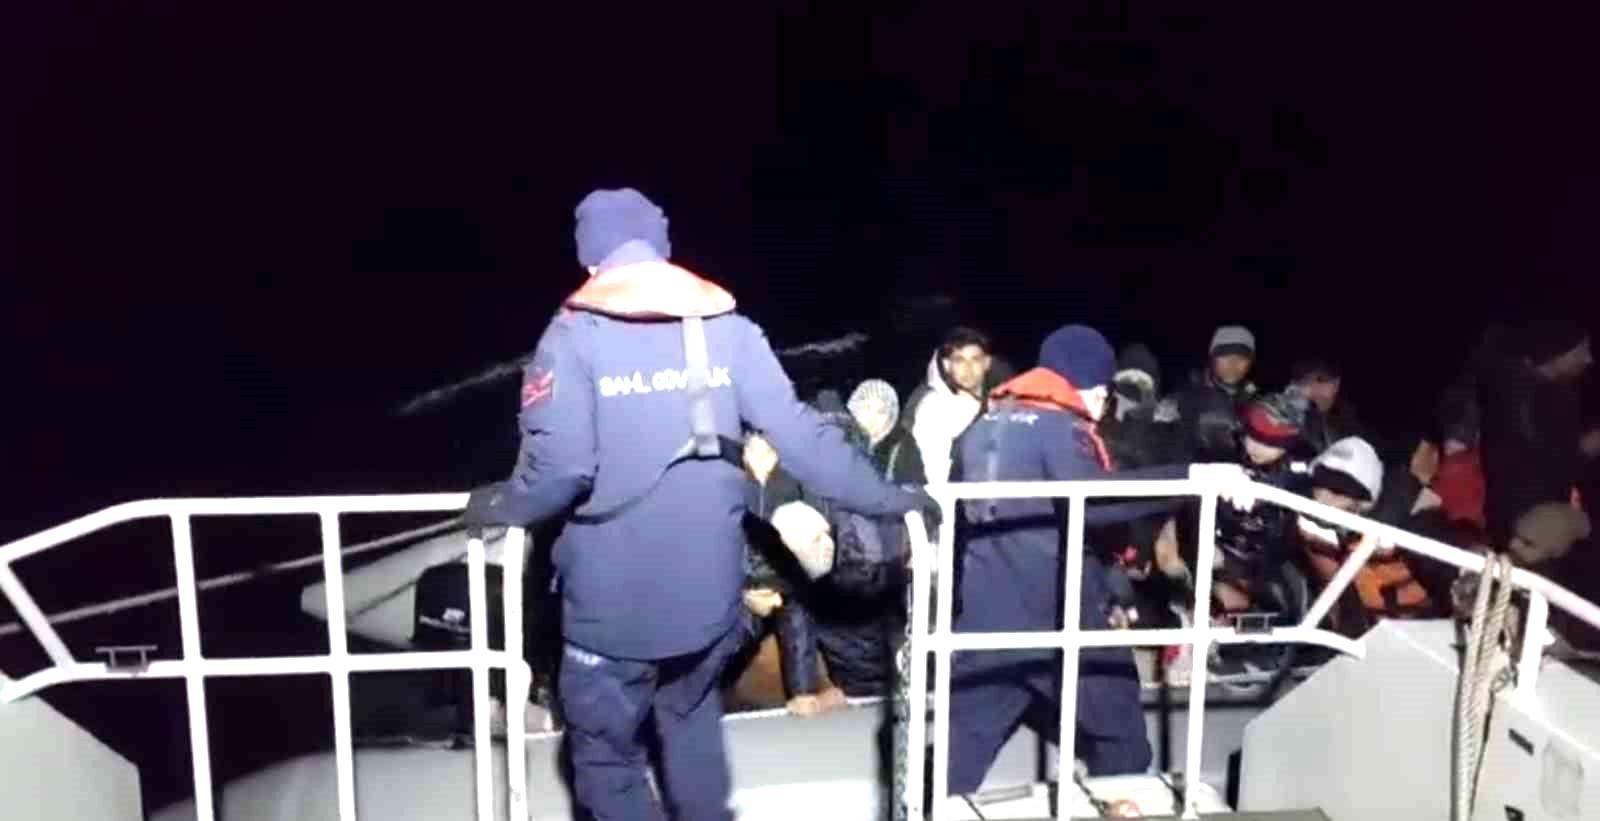 Ayvalık açıklarında 27’si çocuk, 54 düzensiz göçmen kurtarıldı